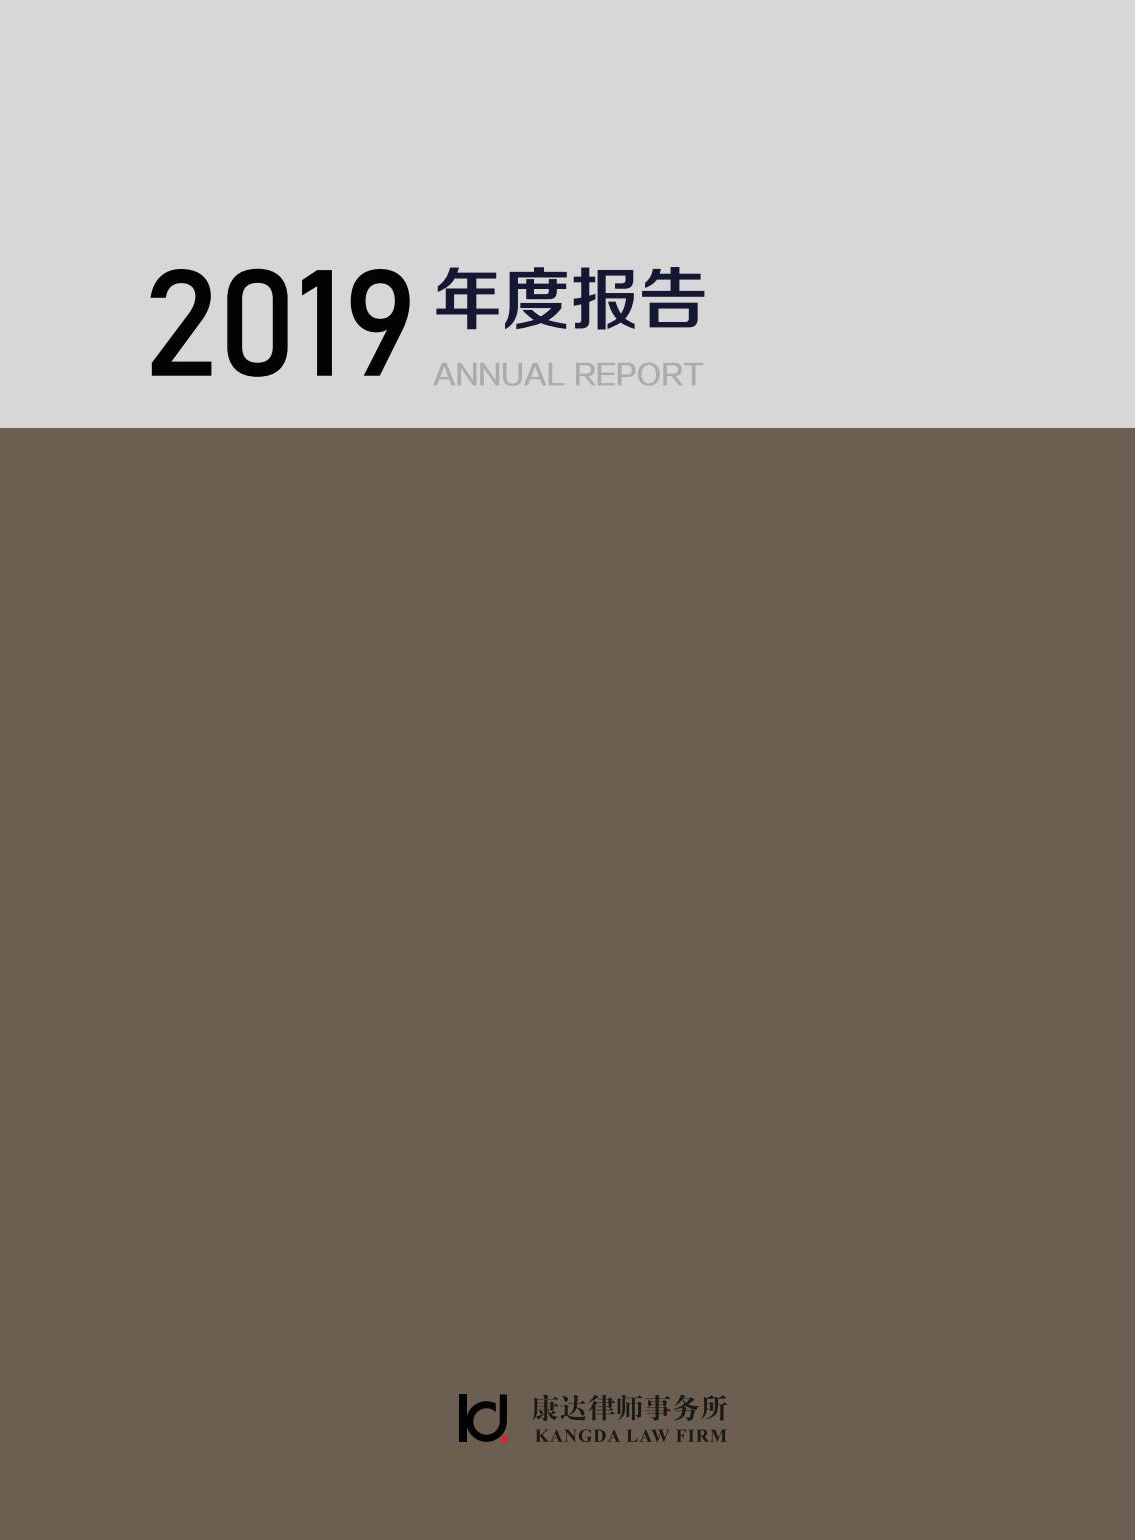 2019年度报告